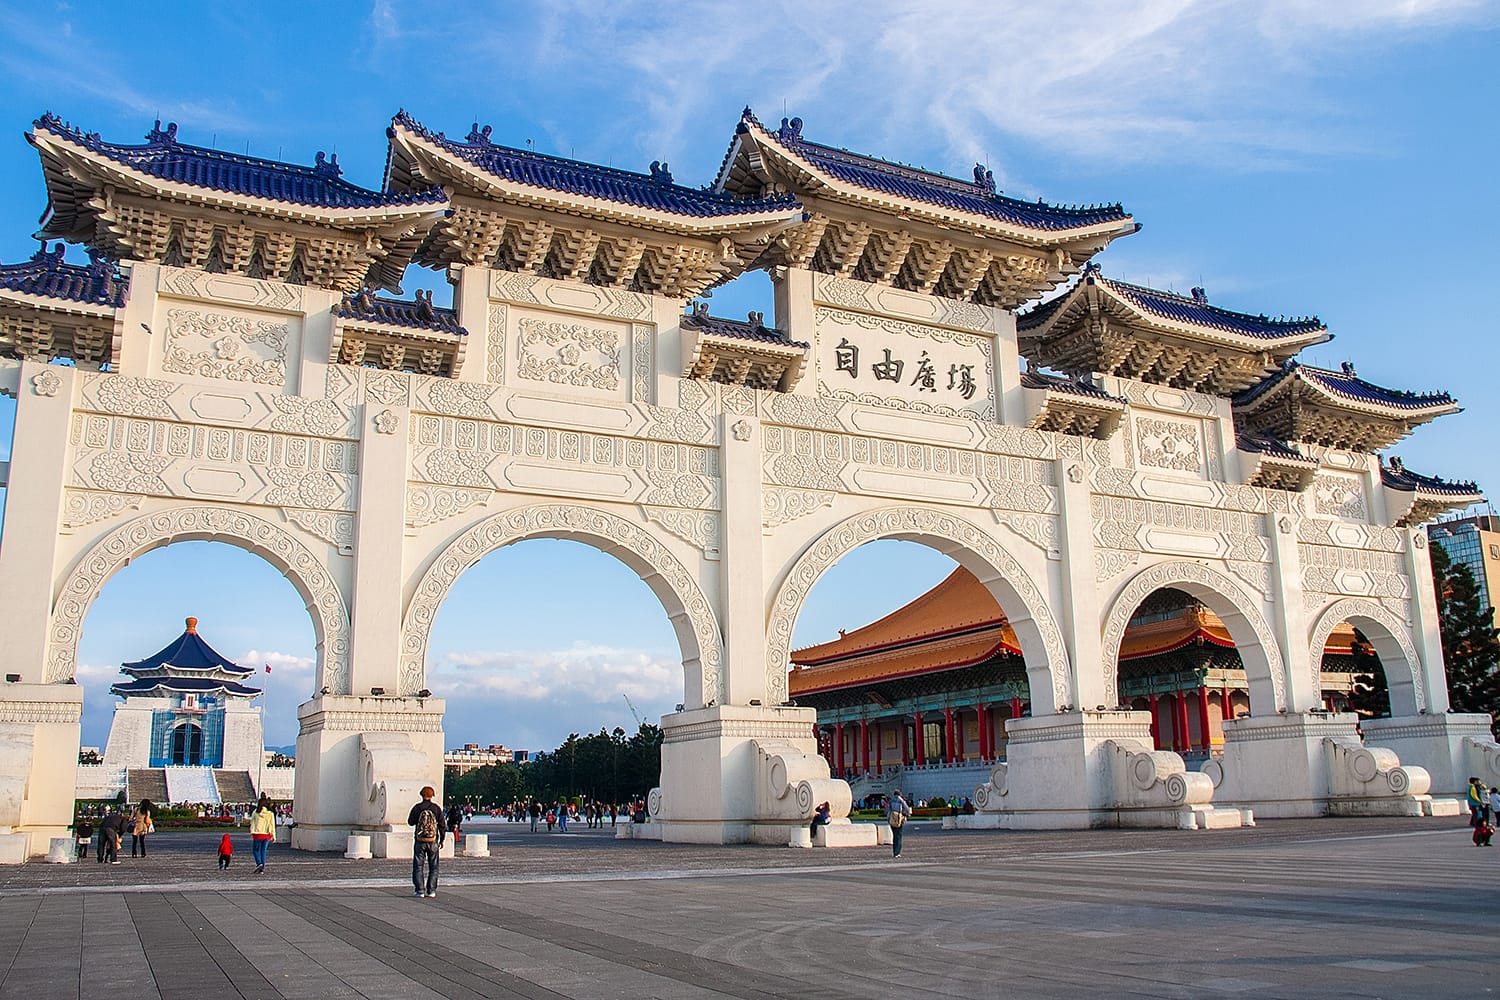 Liberty Square Arch in Taipei, Taiwan